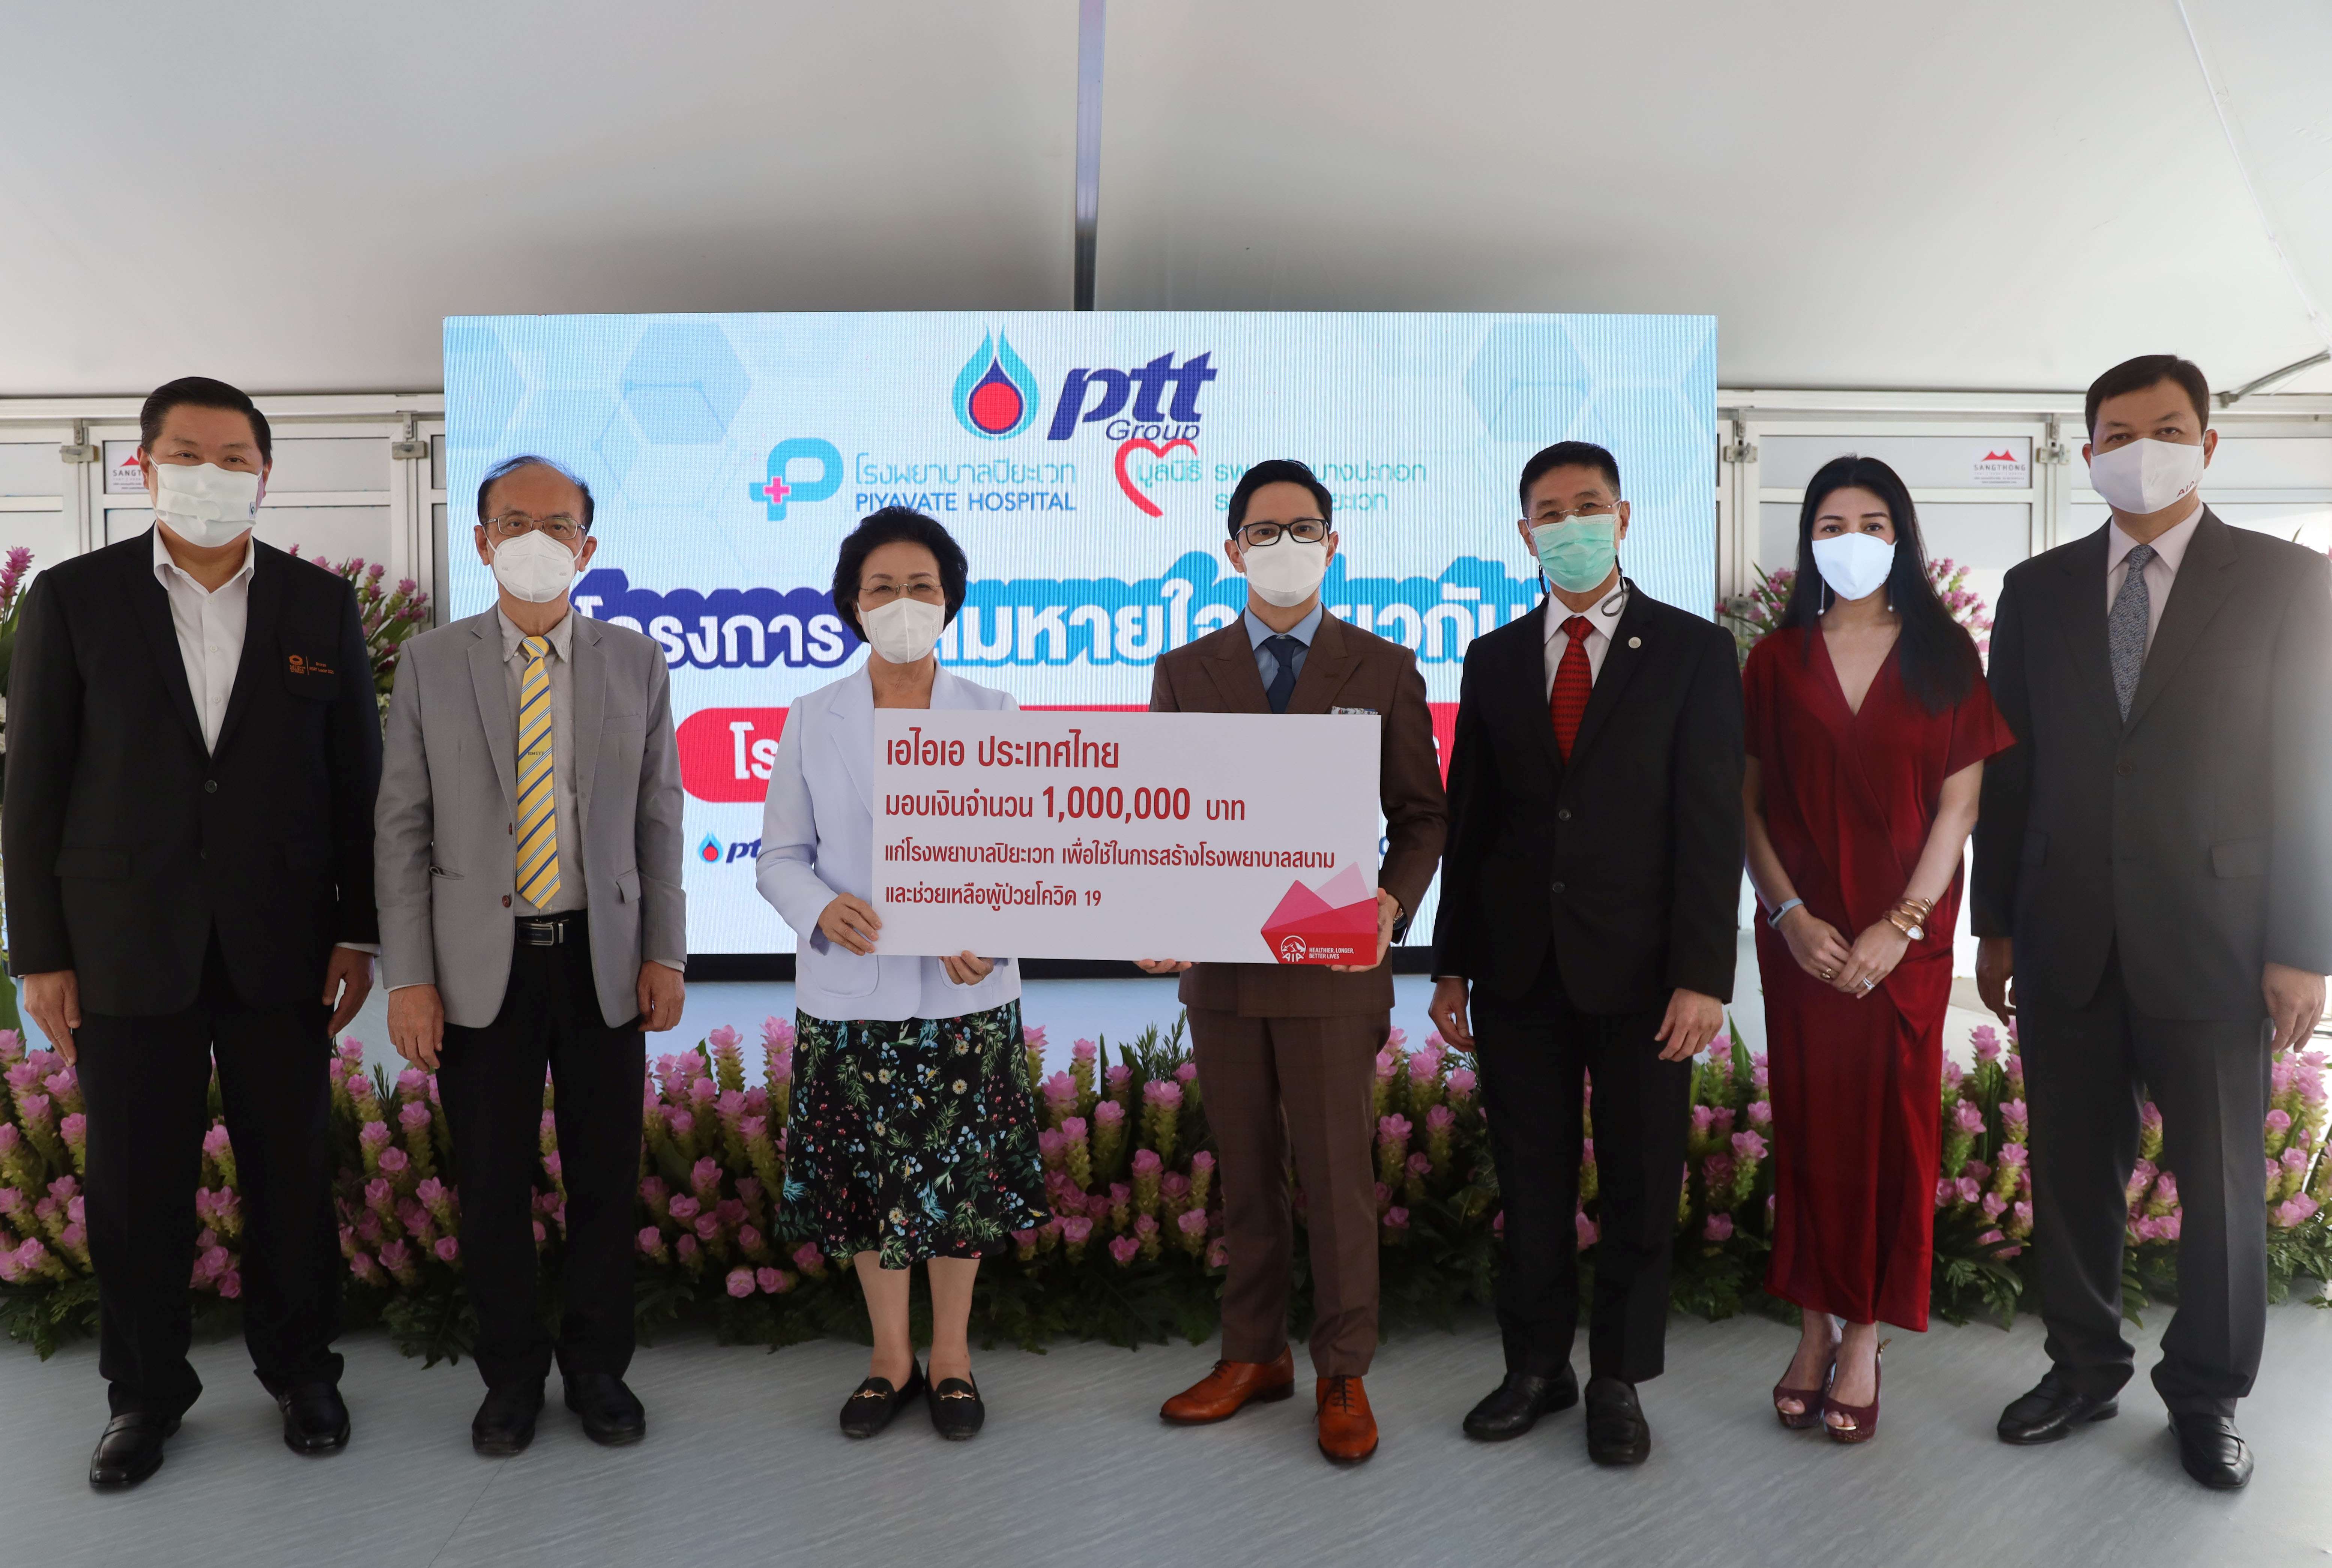 เอไอเอ ประเทศไทย มอบเงิน 1 ล้านบาท สนับสนุนการสร้างโรงพยาบาลสนาม เพื่อรองรับผู้ป่วยโรคโควิด 19 แก่มูลนิธิเครือโรงพยาบาลปิยะเวท